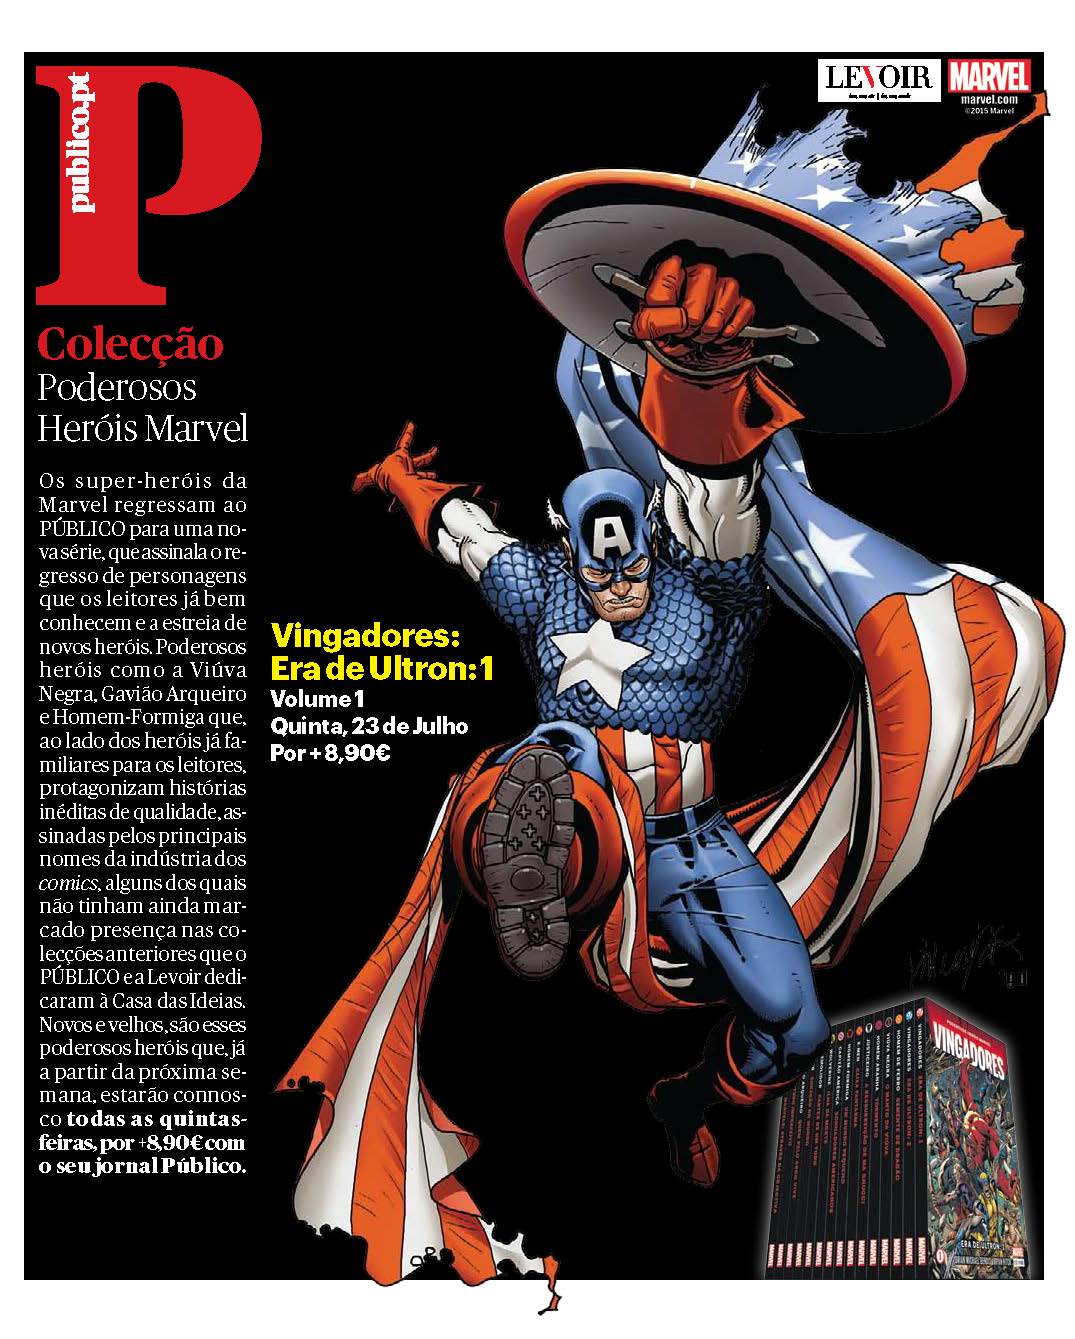 Regressando com o Poder do Rei - Cap. 09 - Leia comics em português!